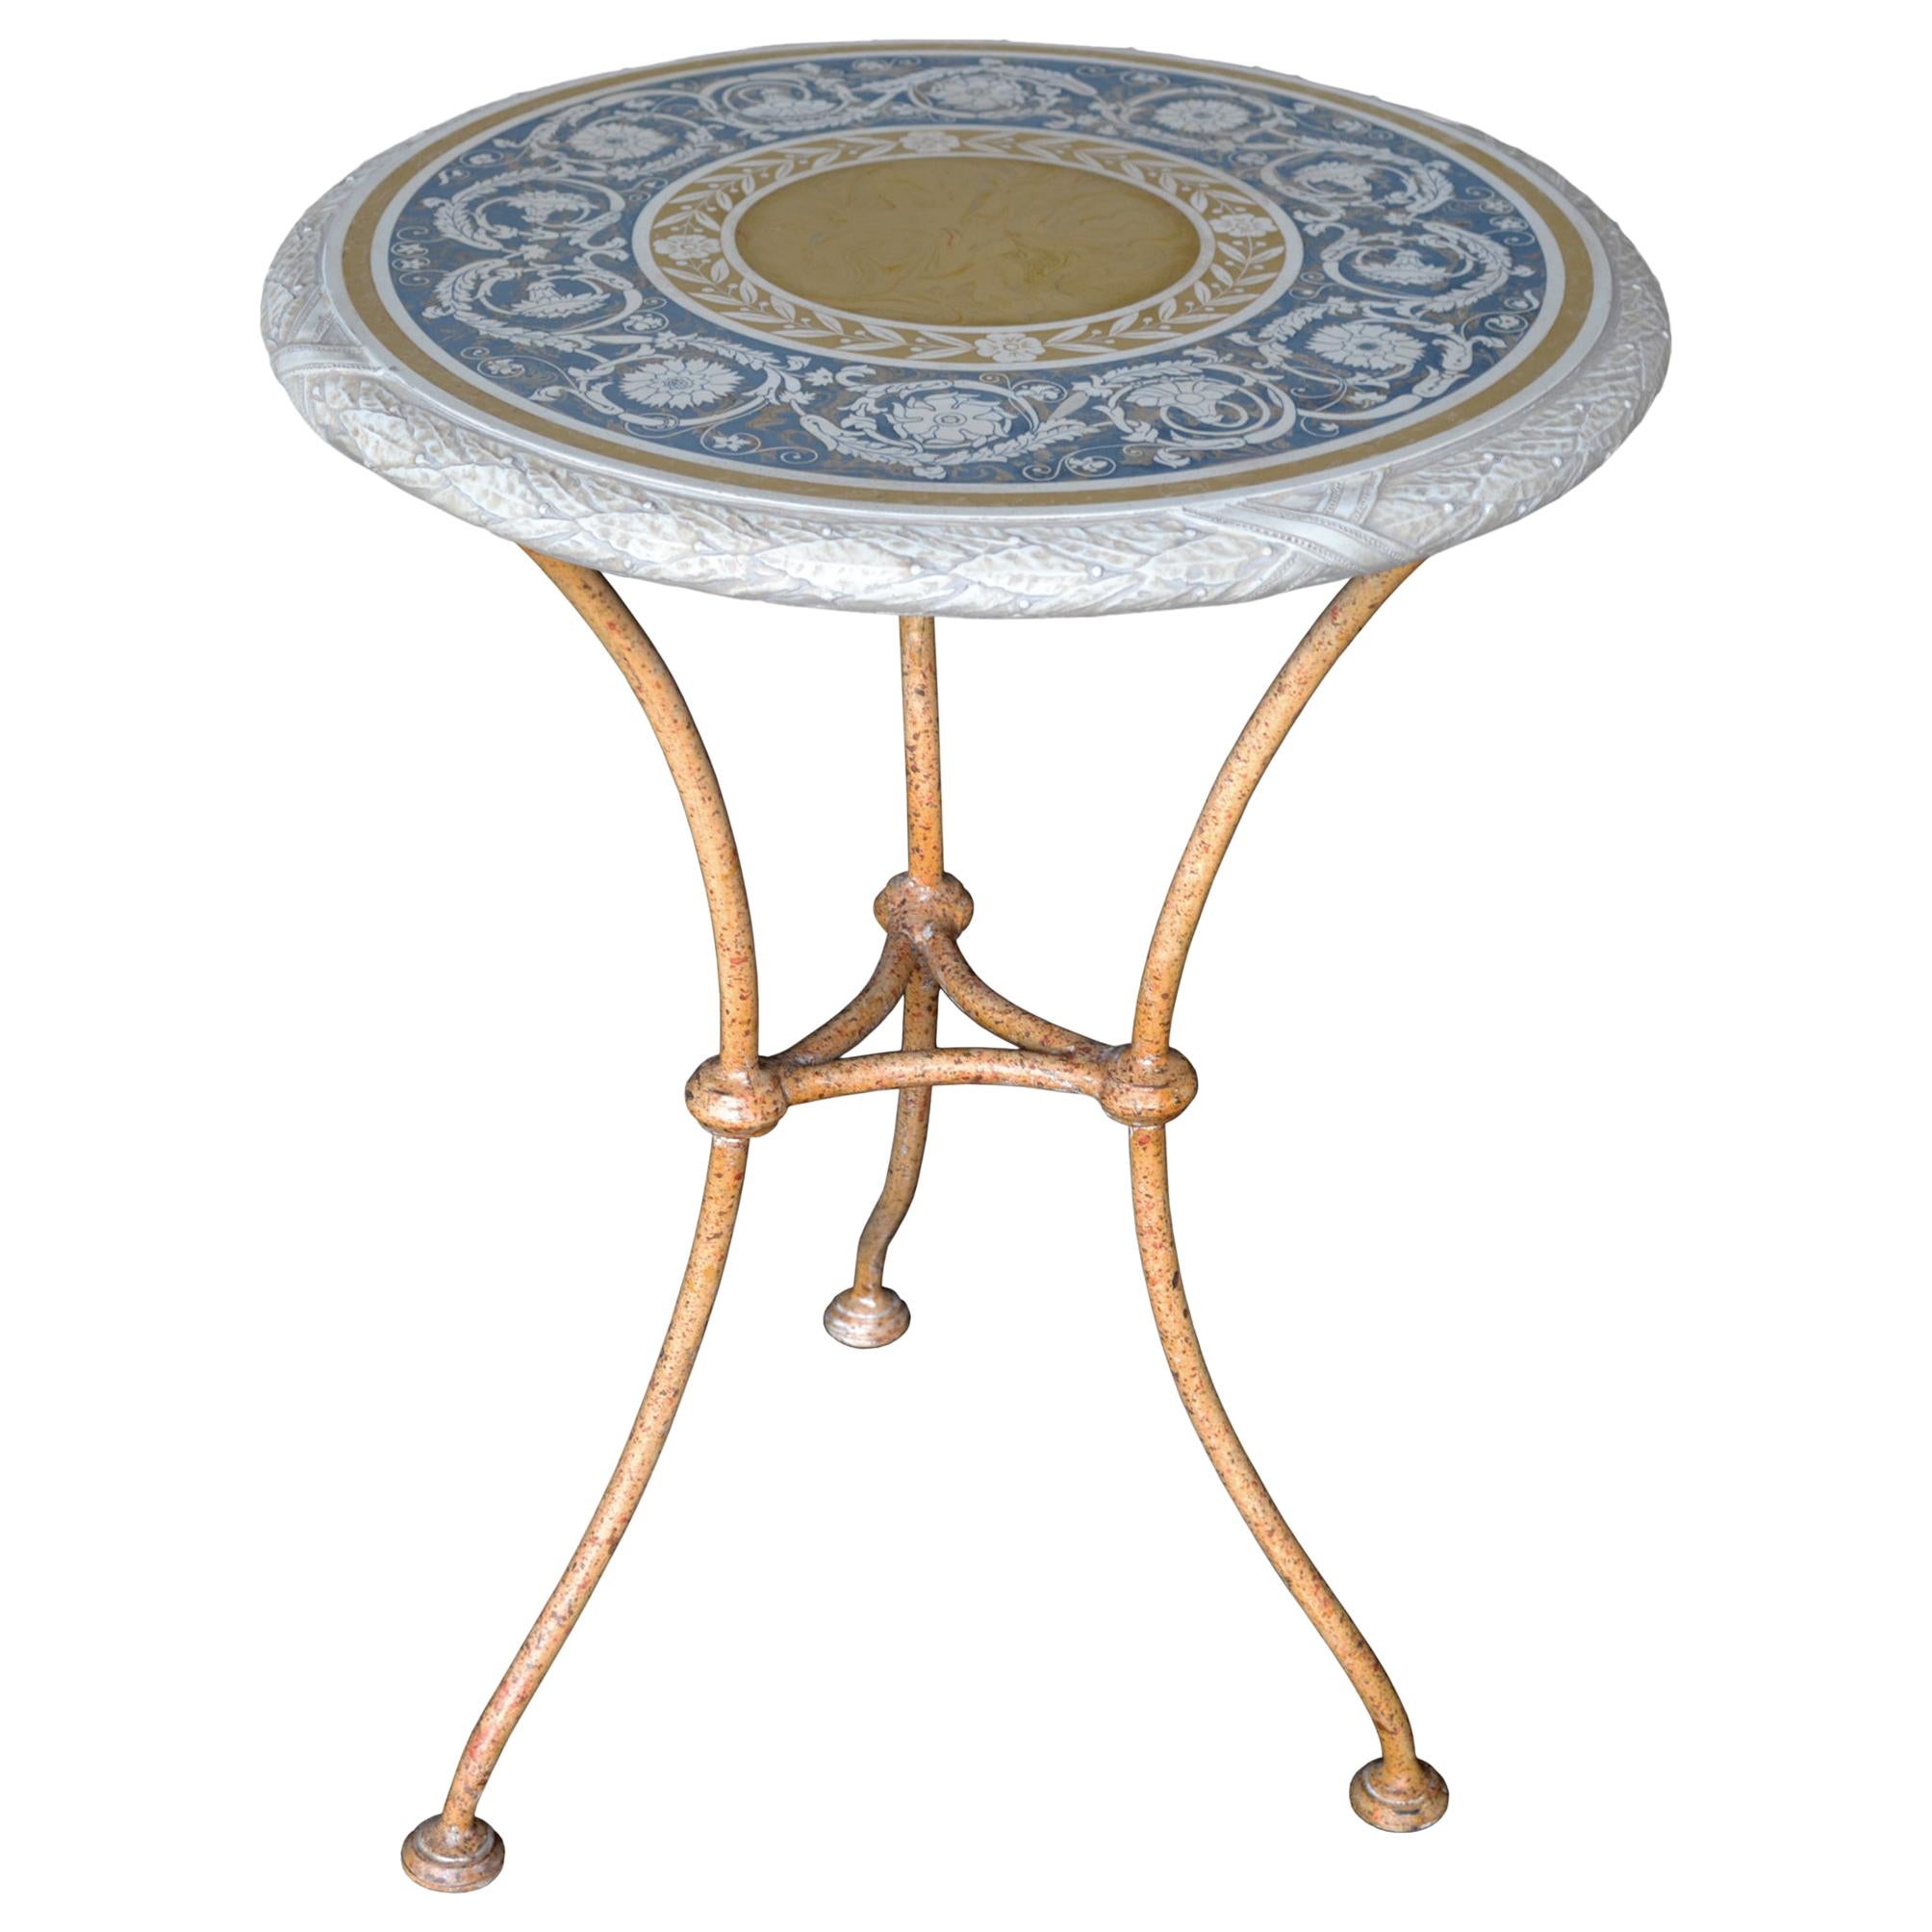 Cette table peut être utilisée comme table à thé, table d'appoint, table de lampe ; elle a de multiples usages.
Le plateau est fabriqué en marqueterie d'art scagliola, la même technique que le 